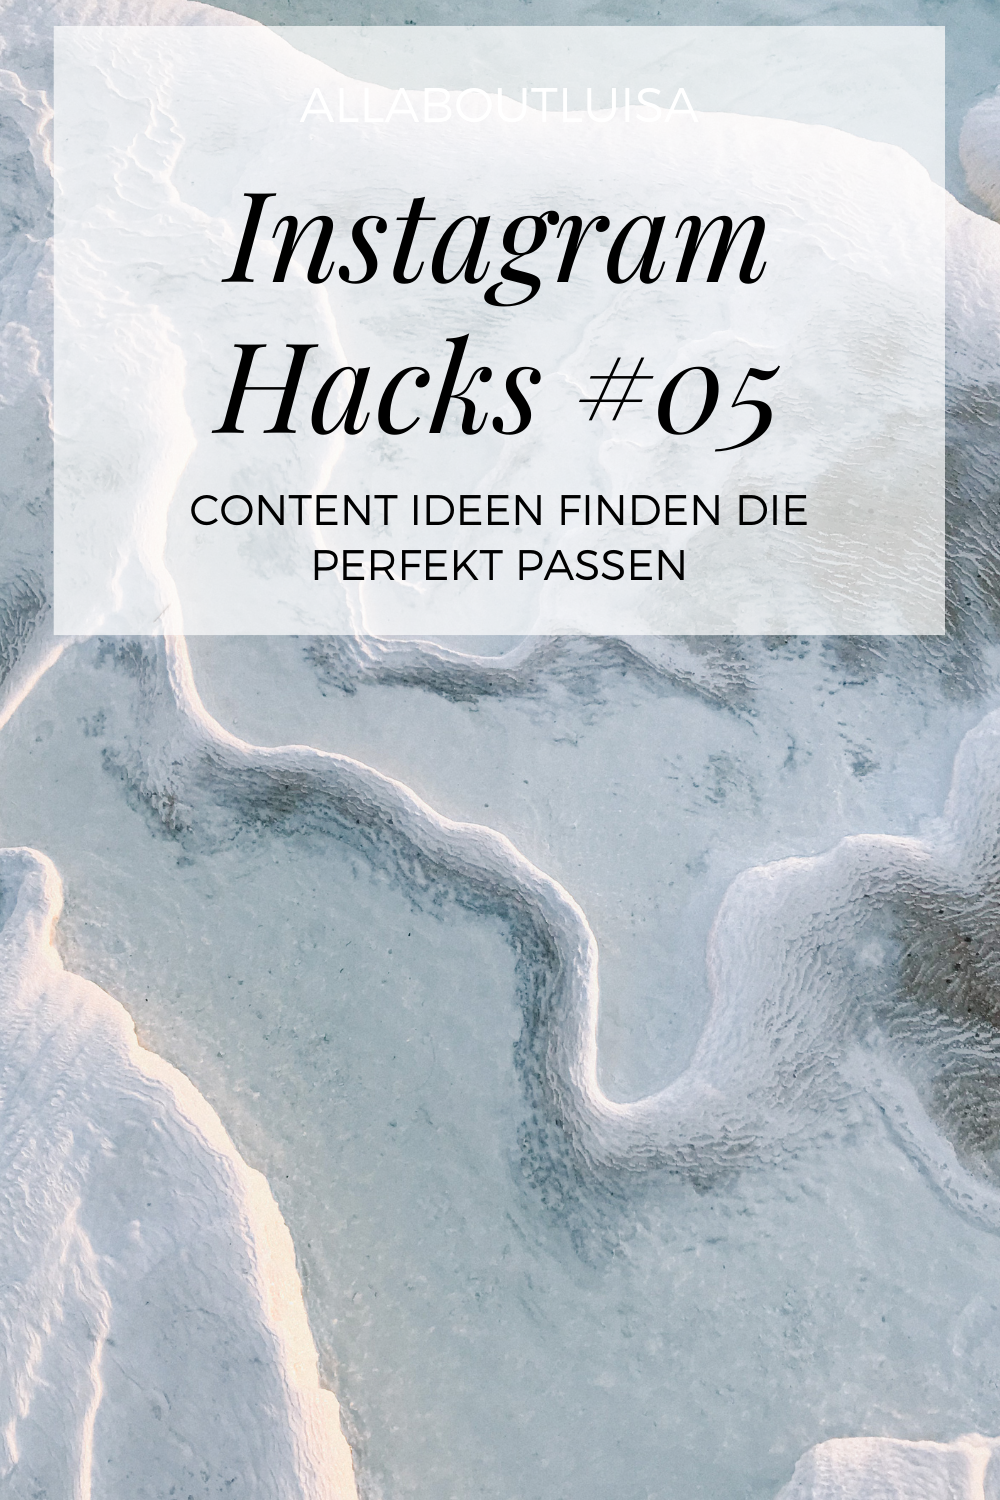 Instagram Hacks #05 – Content Ideen finden die perfekt passen